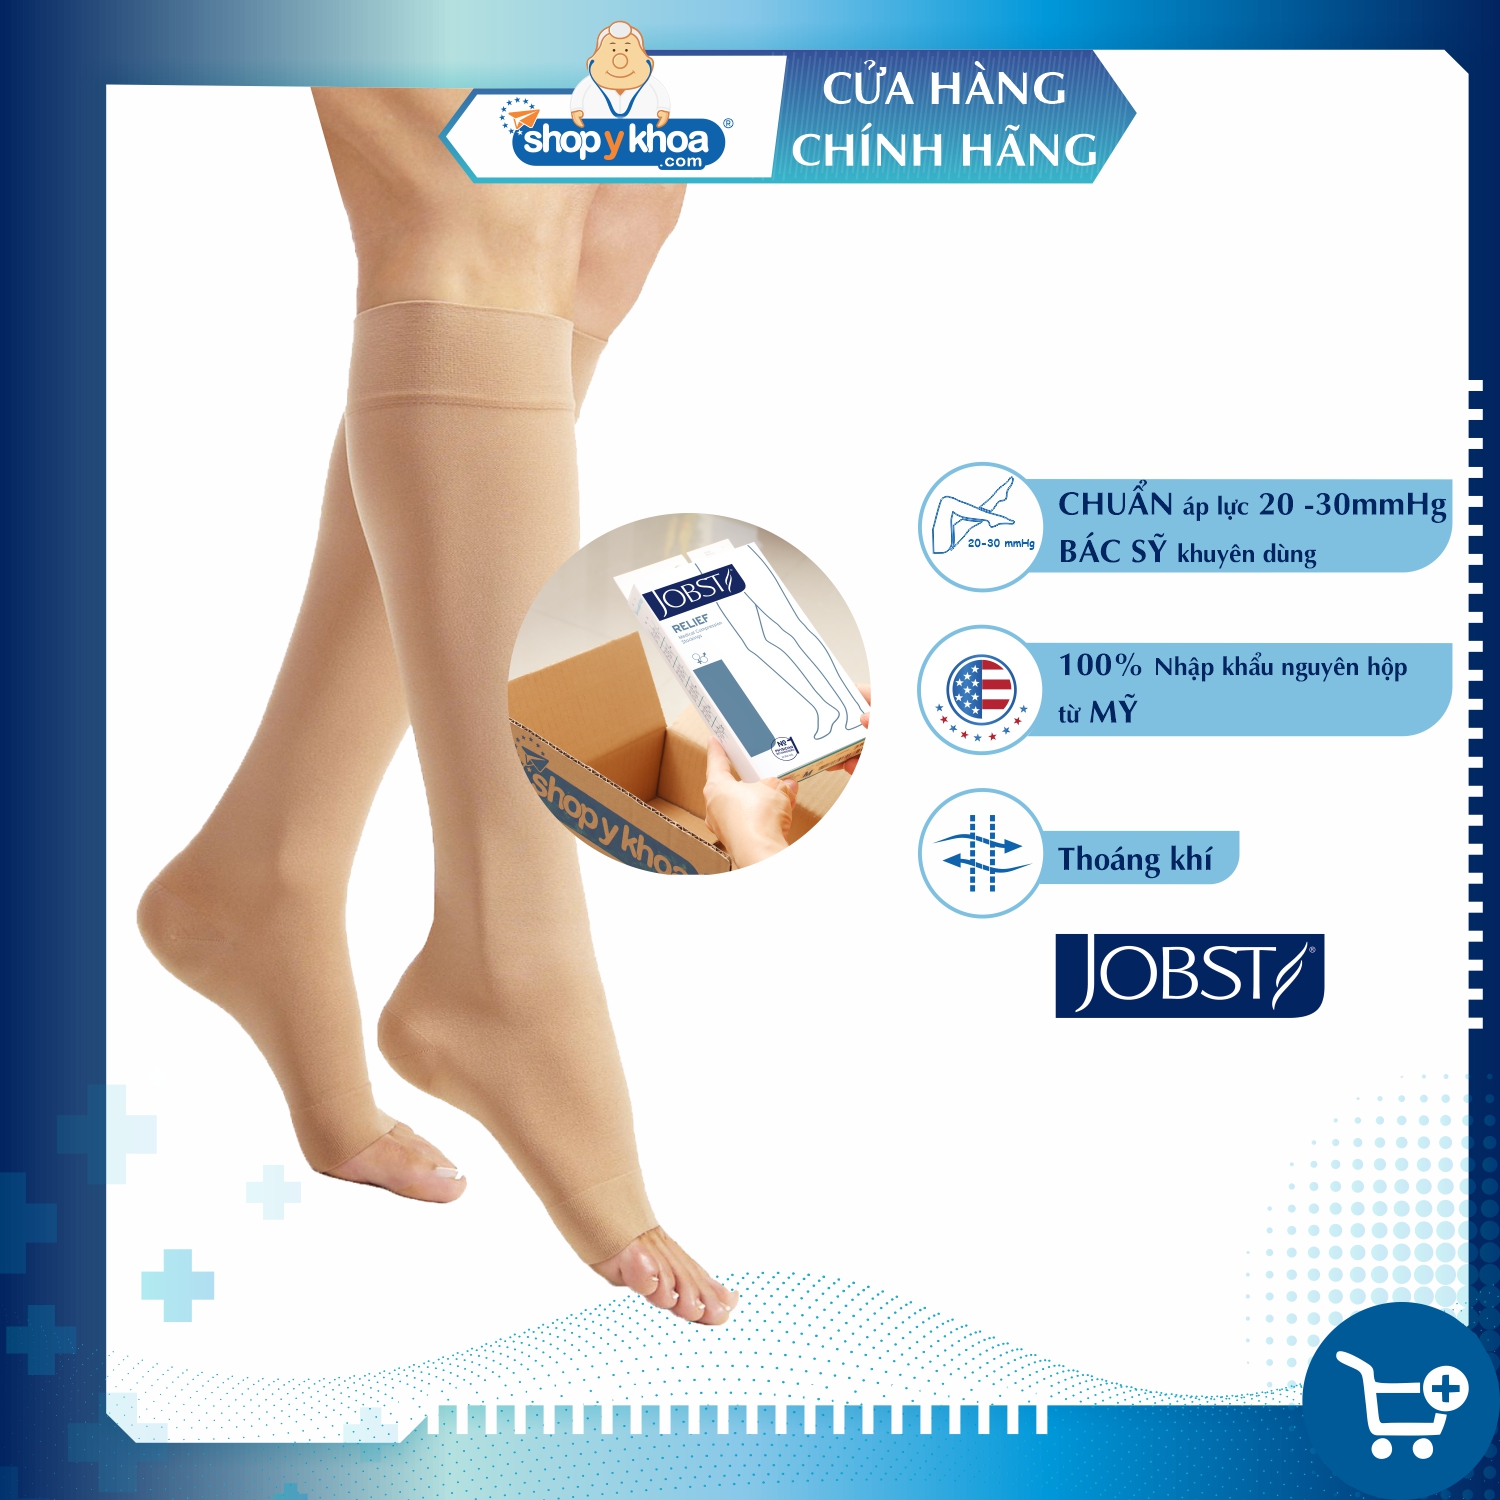 Vớ y khoa gối Hỗ Trợ Điều Trị suy giãn tĩnh mạch chân JOBST Relief chuẩn áp lực 20-30mmHg (màu da, hở ngón) (tất y khoa)